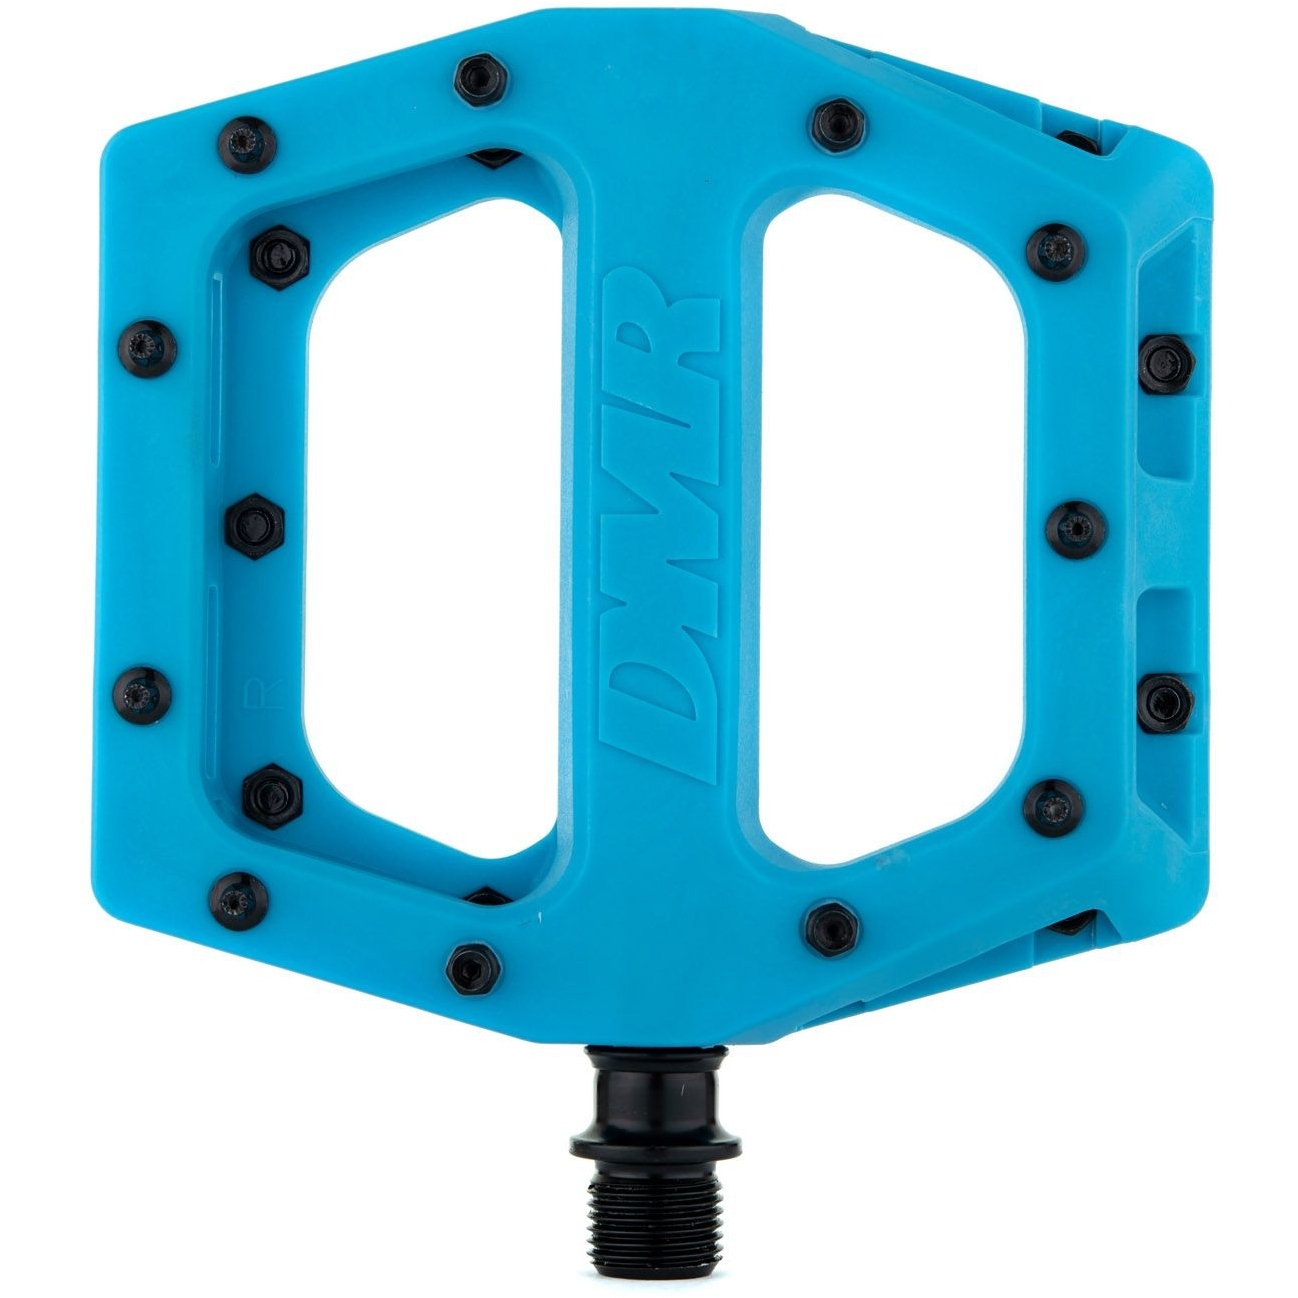 Productfoto van DMR V11 Flat Pedals - blue